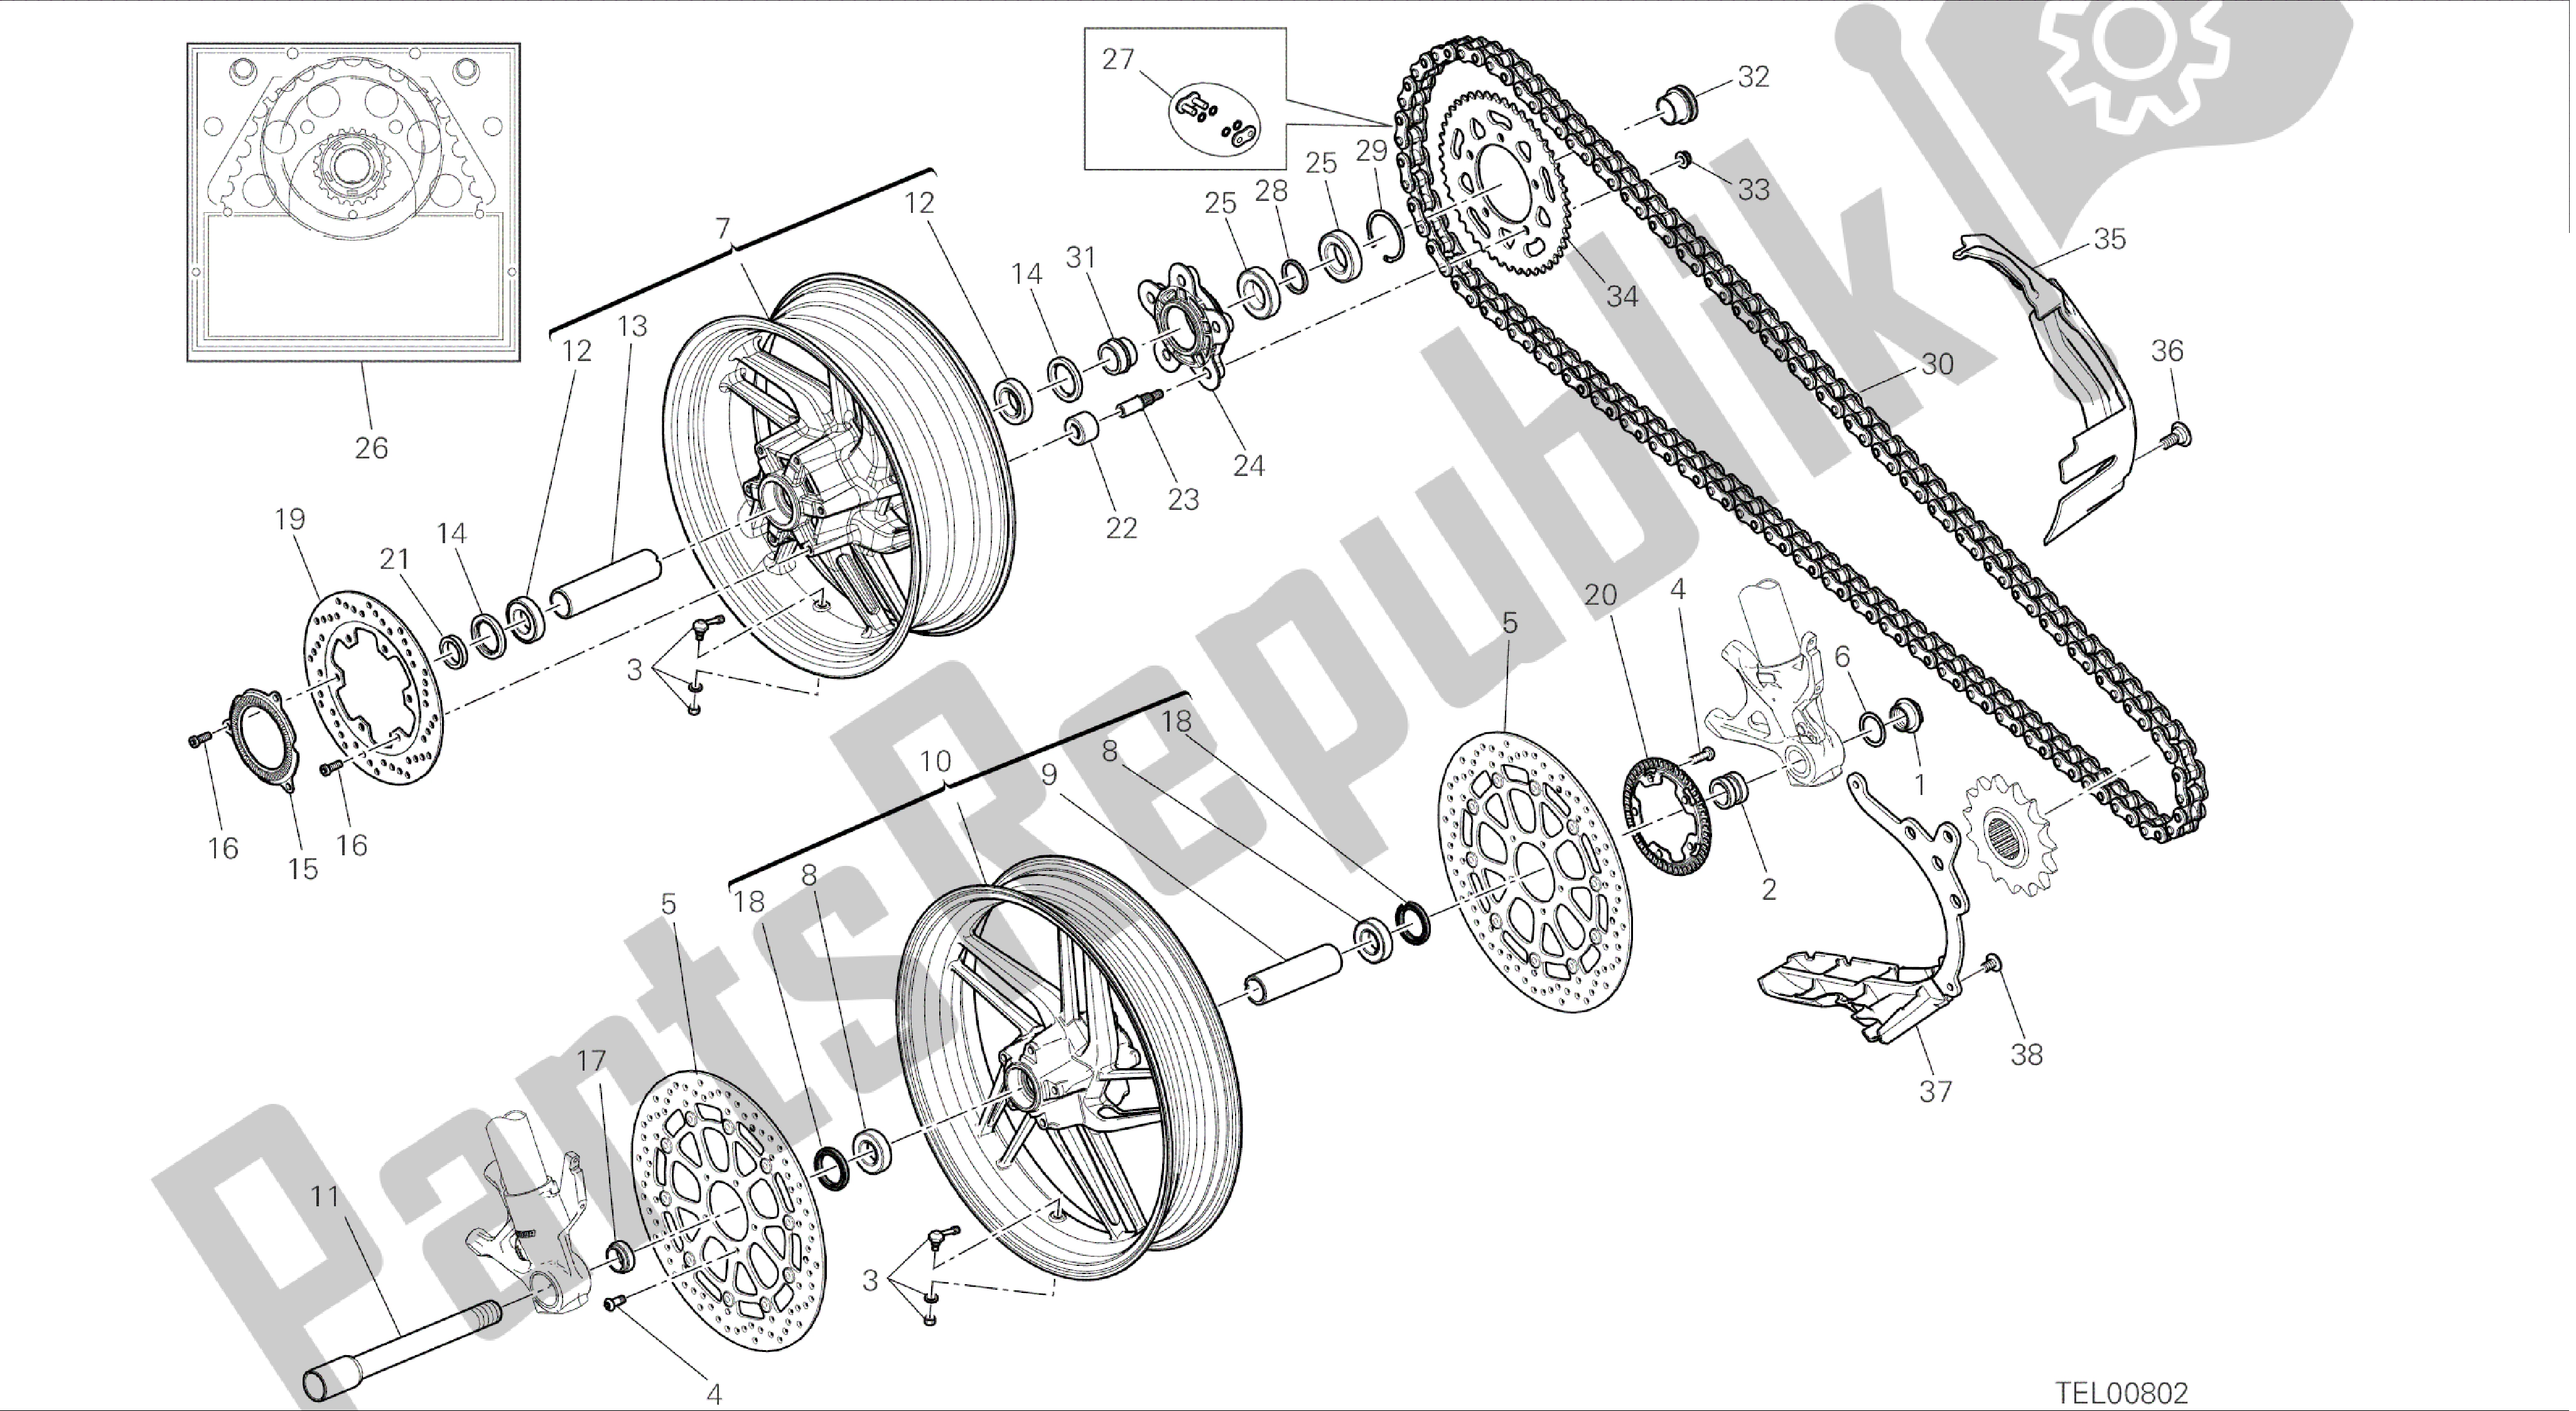 Todas as partes de Desenho 026 - Ruota Anteriore E Posteriore [mod: 899abs; Xst: Aus, Eur, Fra, Jap, Twn] Quadro De Grupo do Ducati Panigale 899 2014